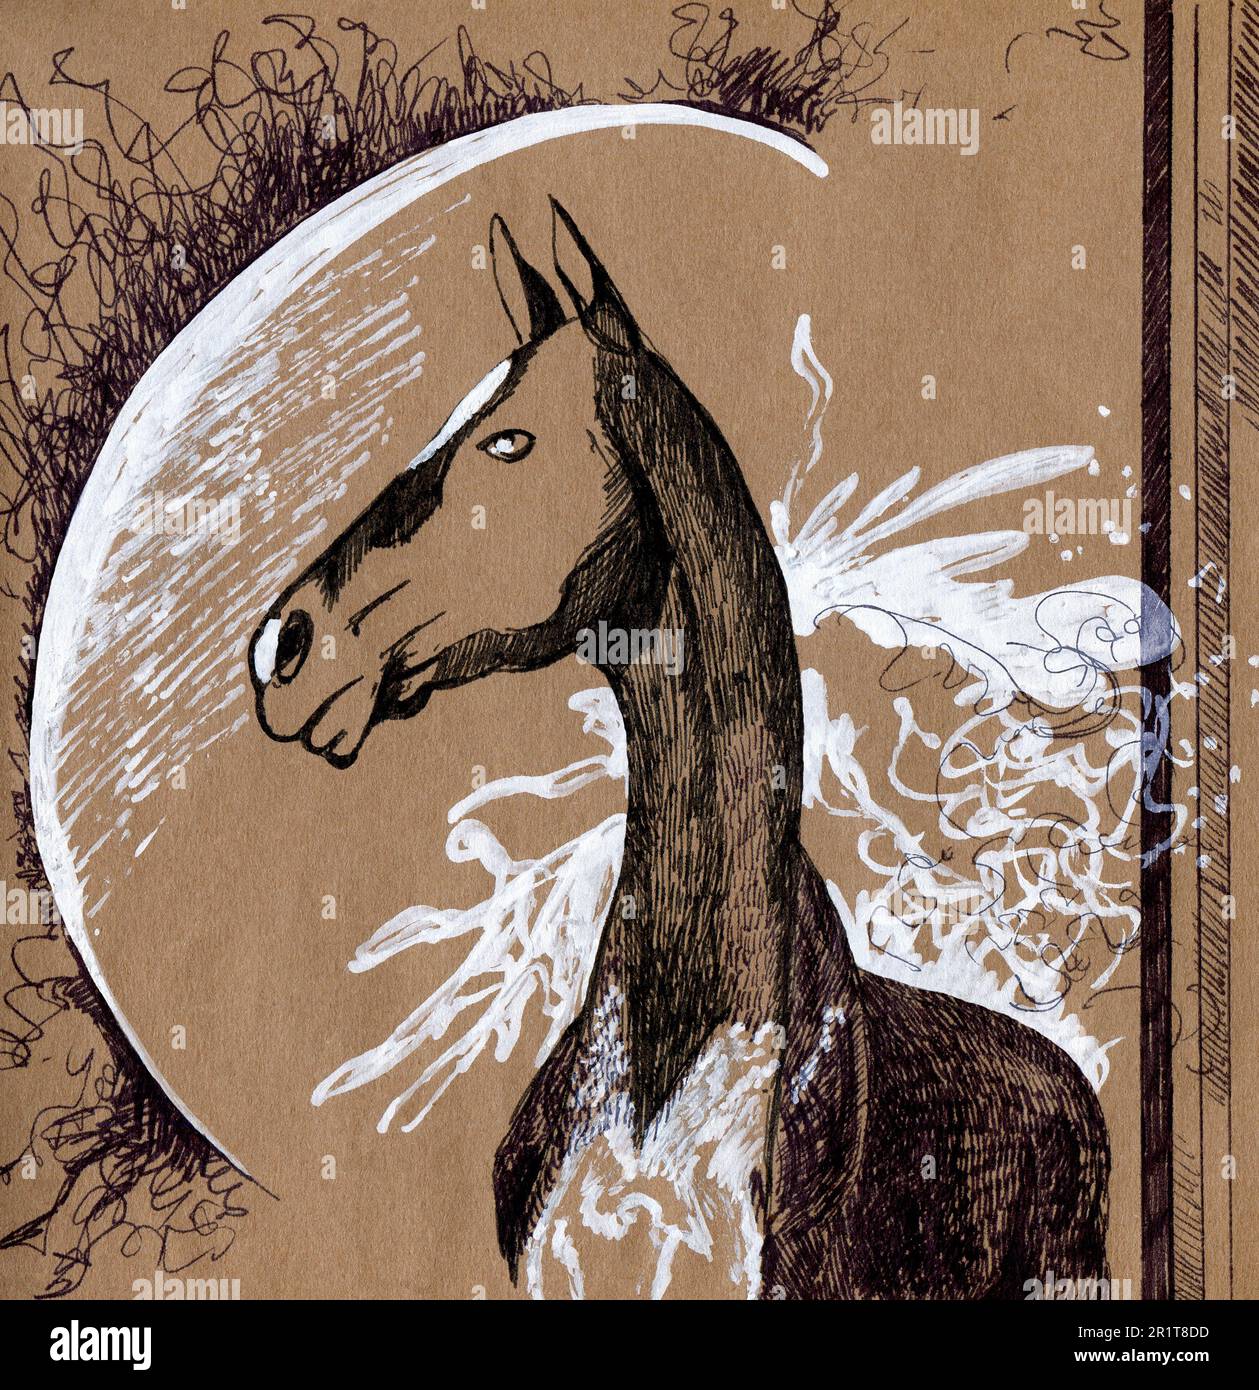 Portrait d'un cheval sur un fond abstrait. Peinture graphique sur papier artisanal avec contour noir et blanc. Dessiné à la main. Banque D'Images